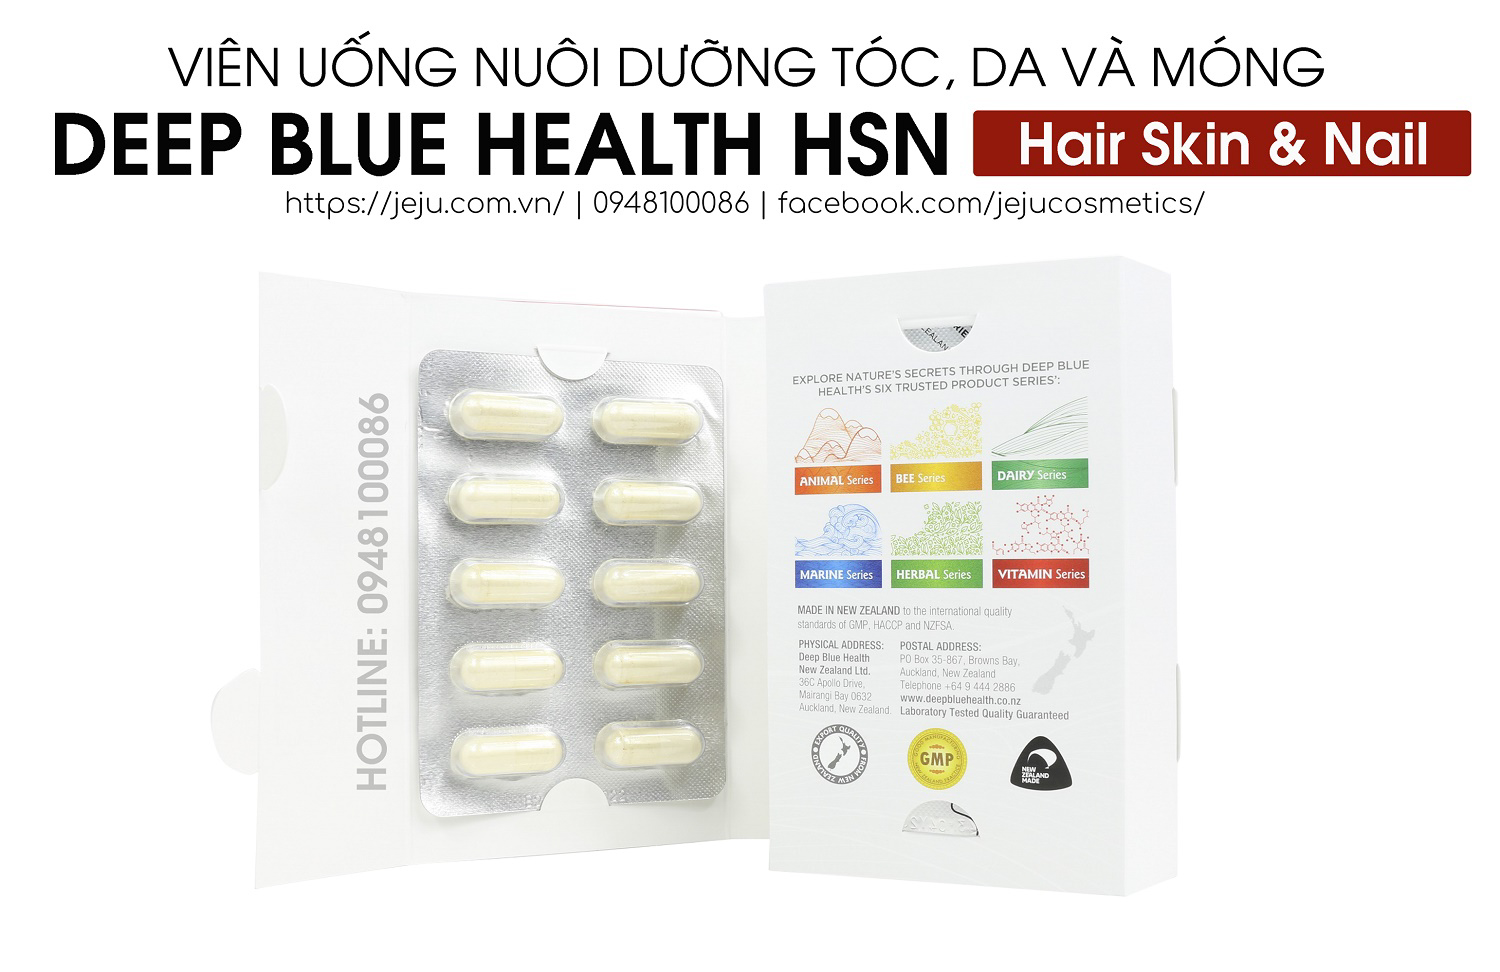 Deep Blue Health HSN Hair Skin & Nail 